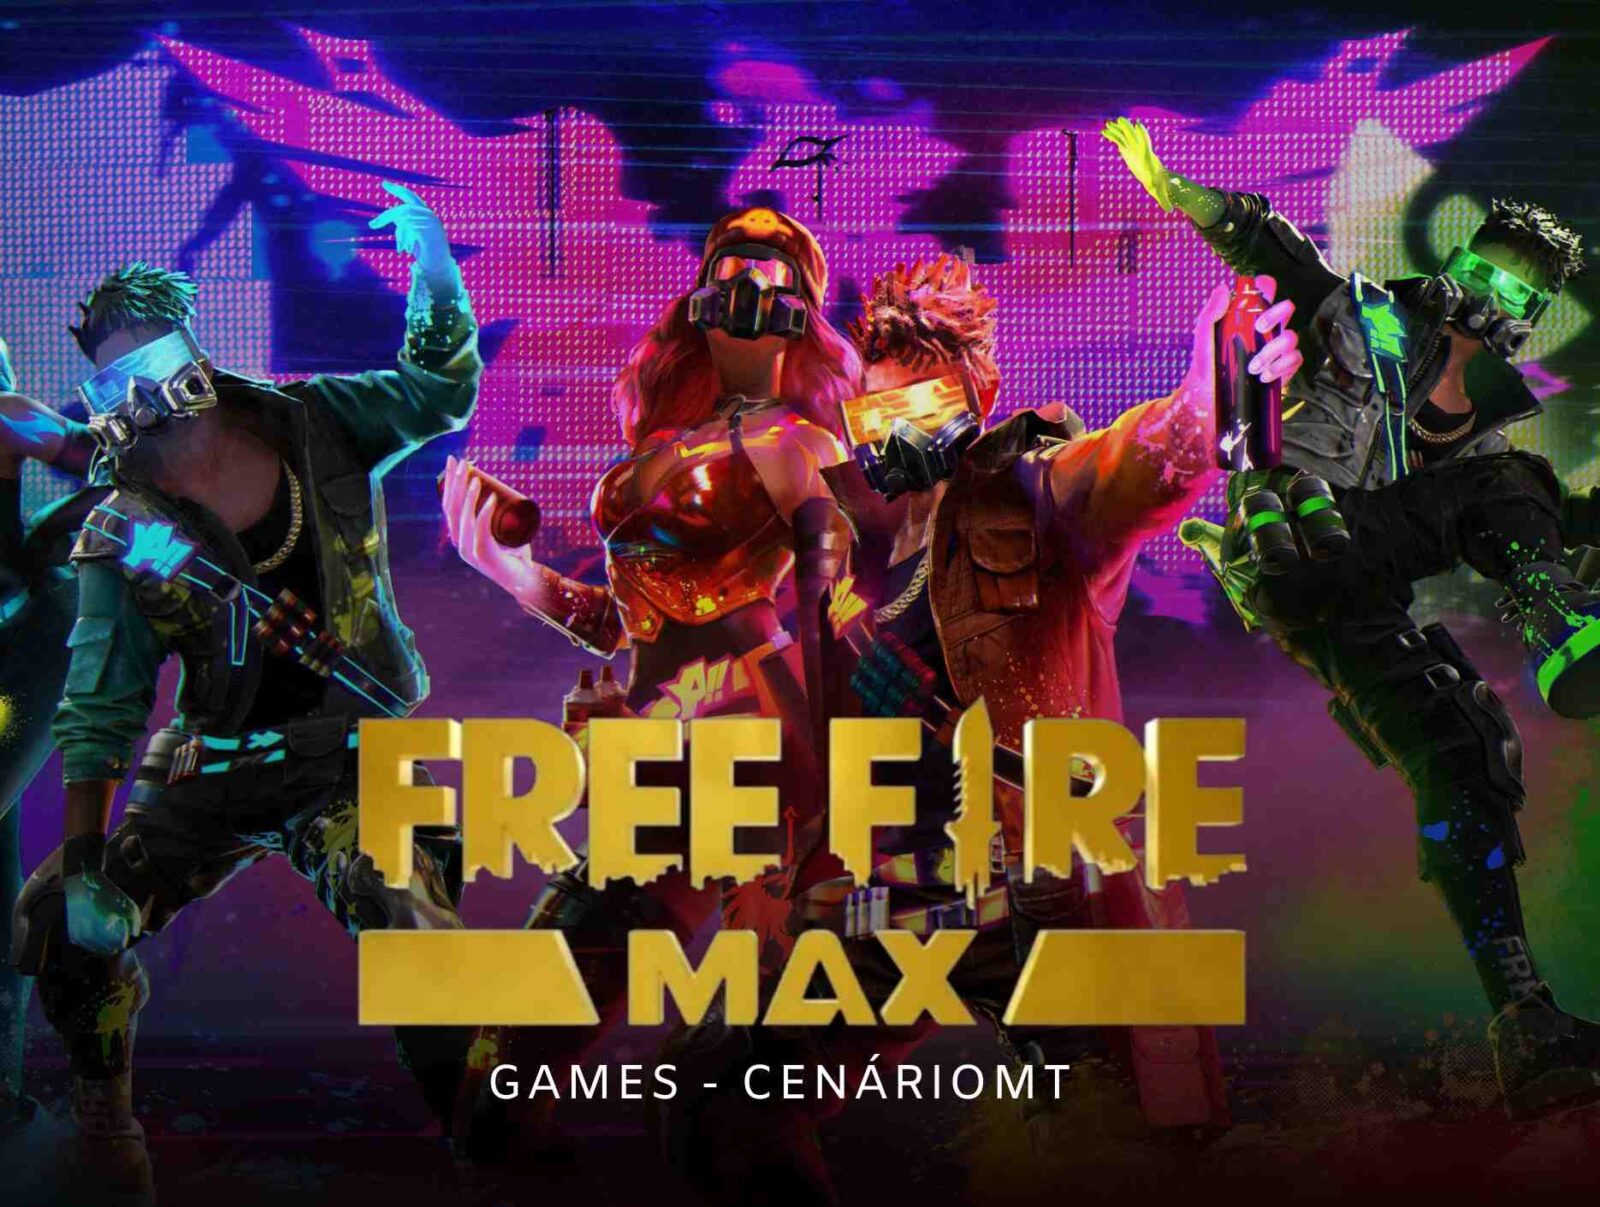 FREE FIRE MAX CENARIOMT